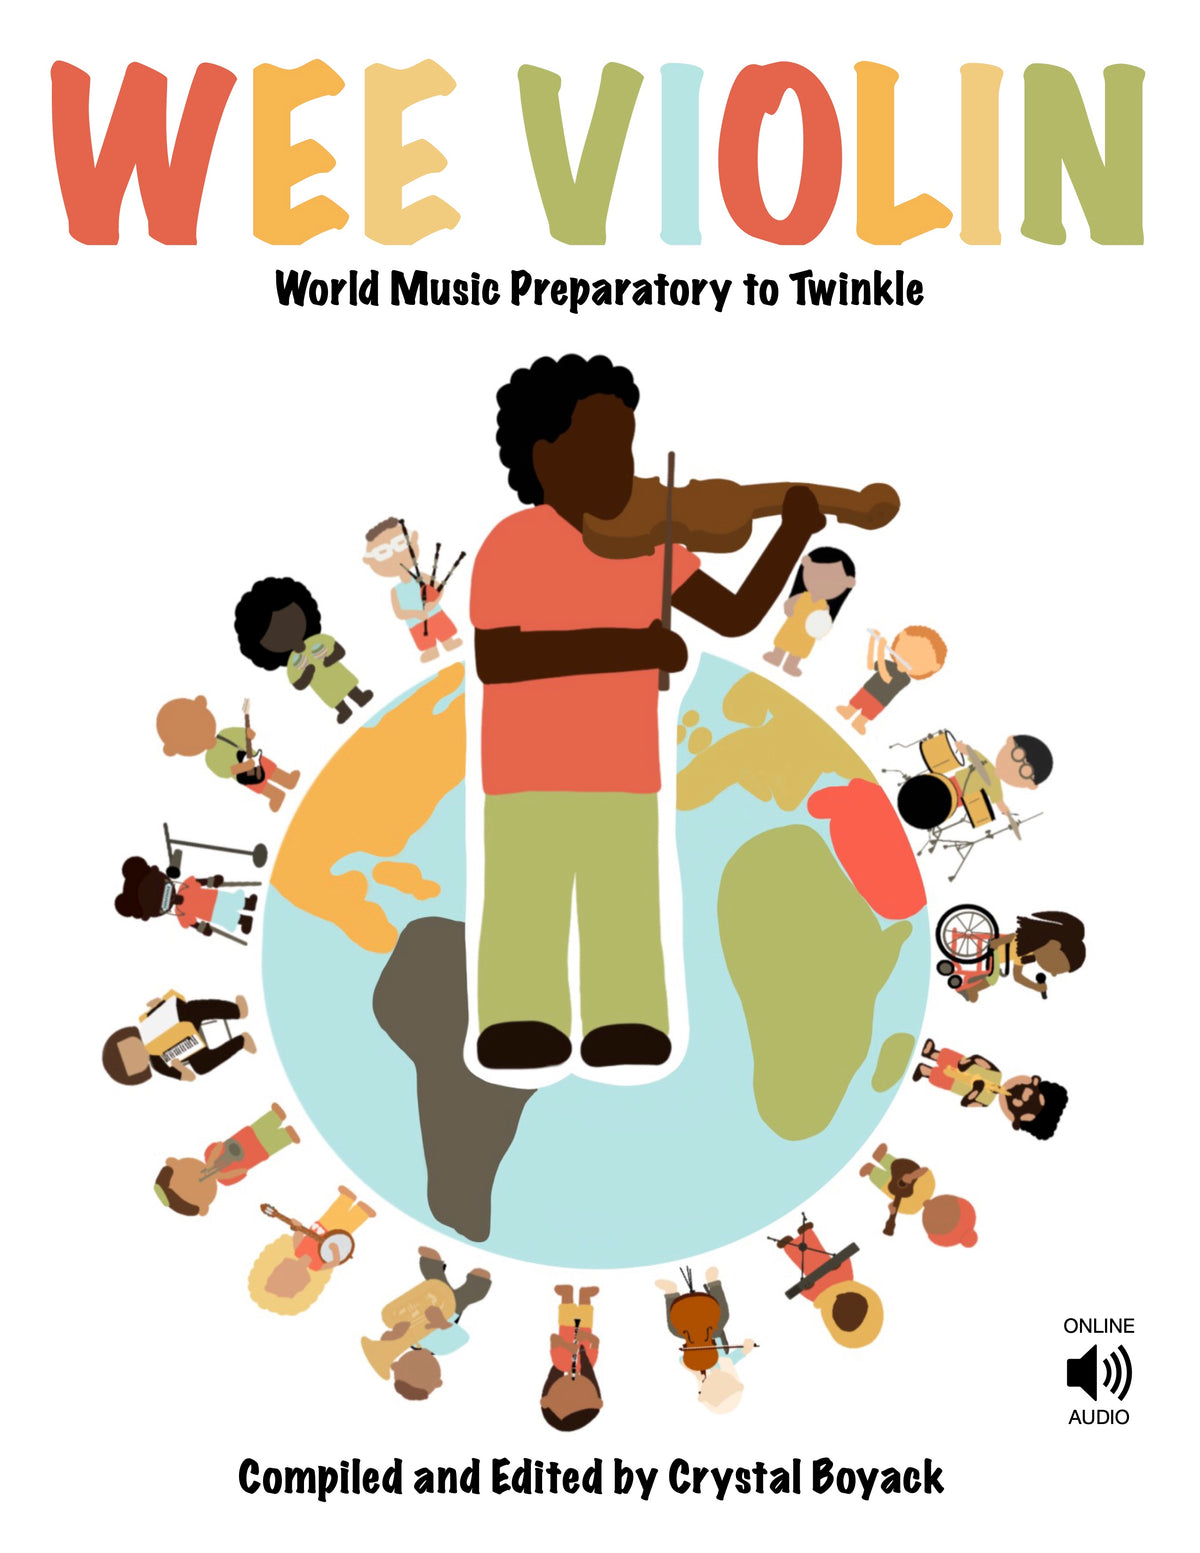 Wee Violin: World Music Preparatory to Twinkle